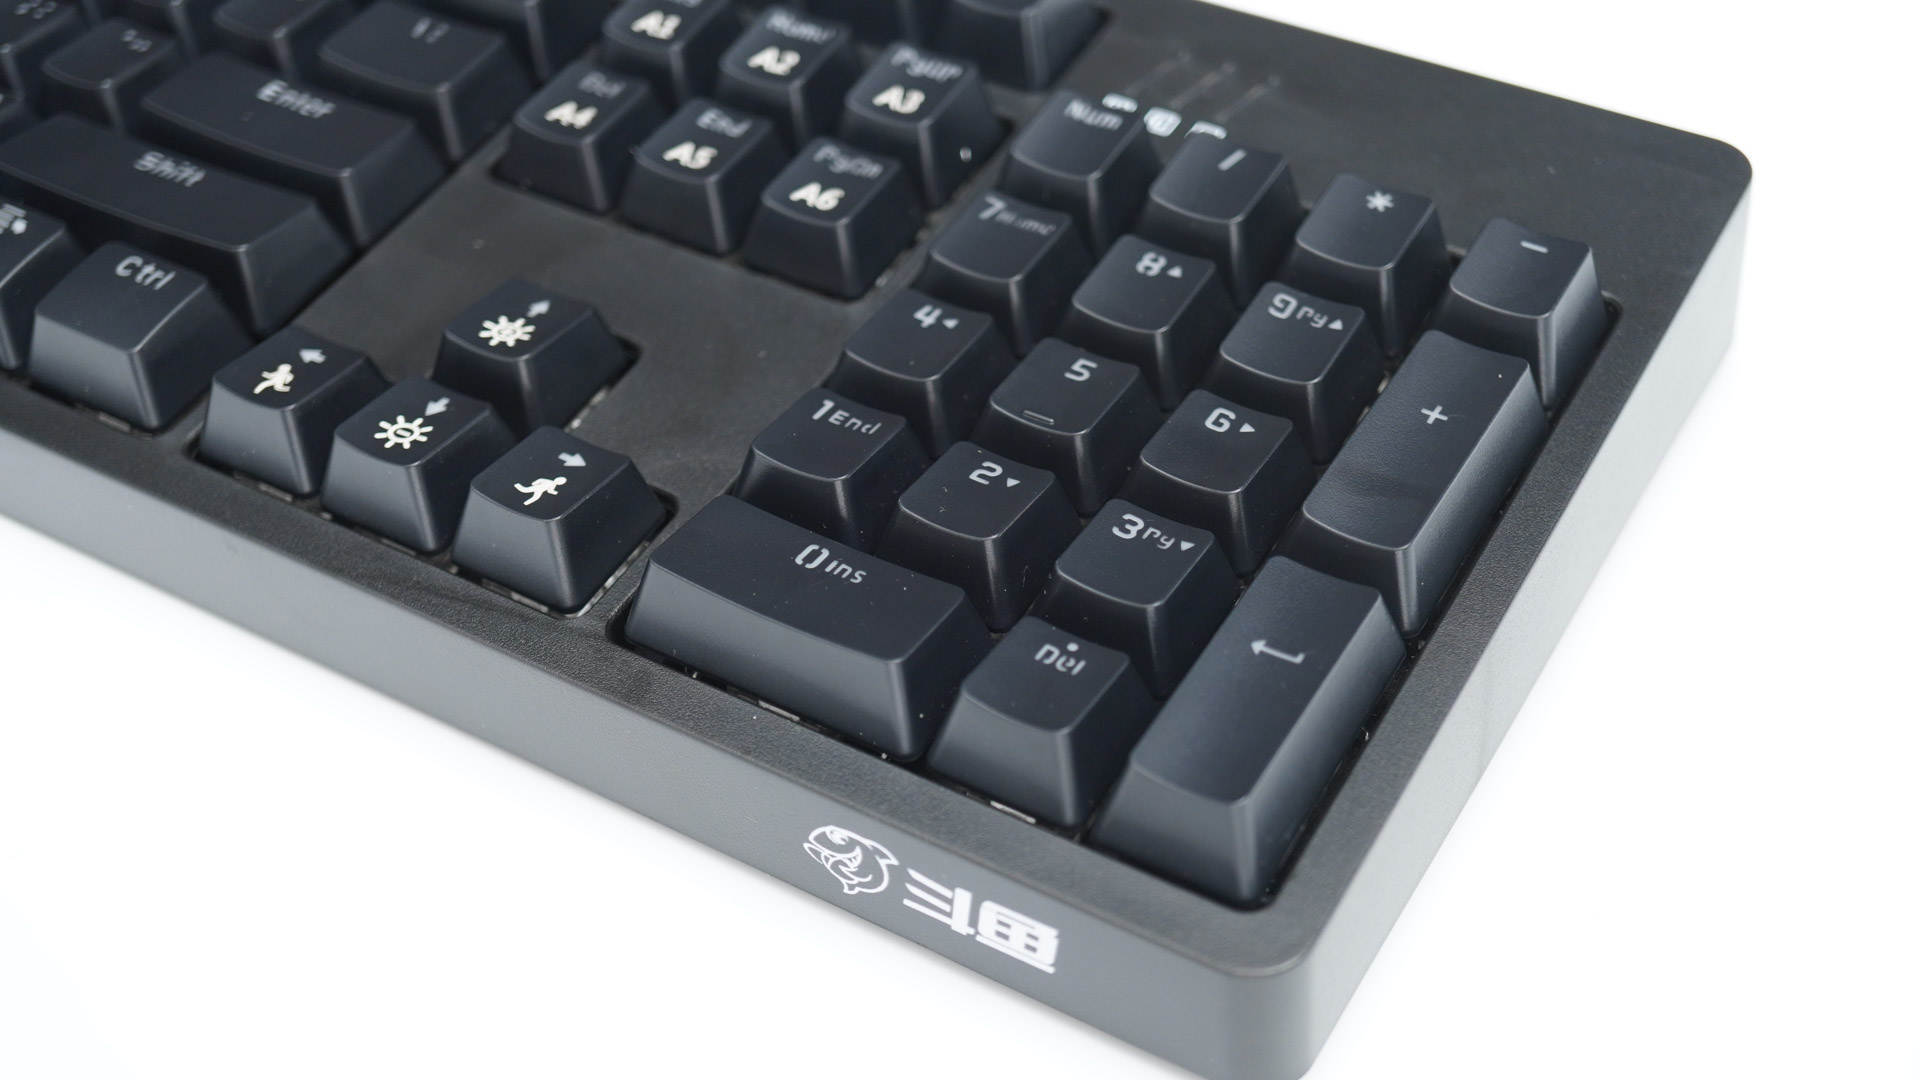 个性化，更自由 - 斗鱼DKM180热插拔机械键盘